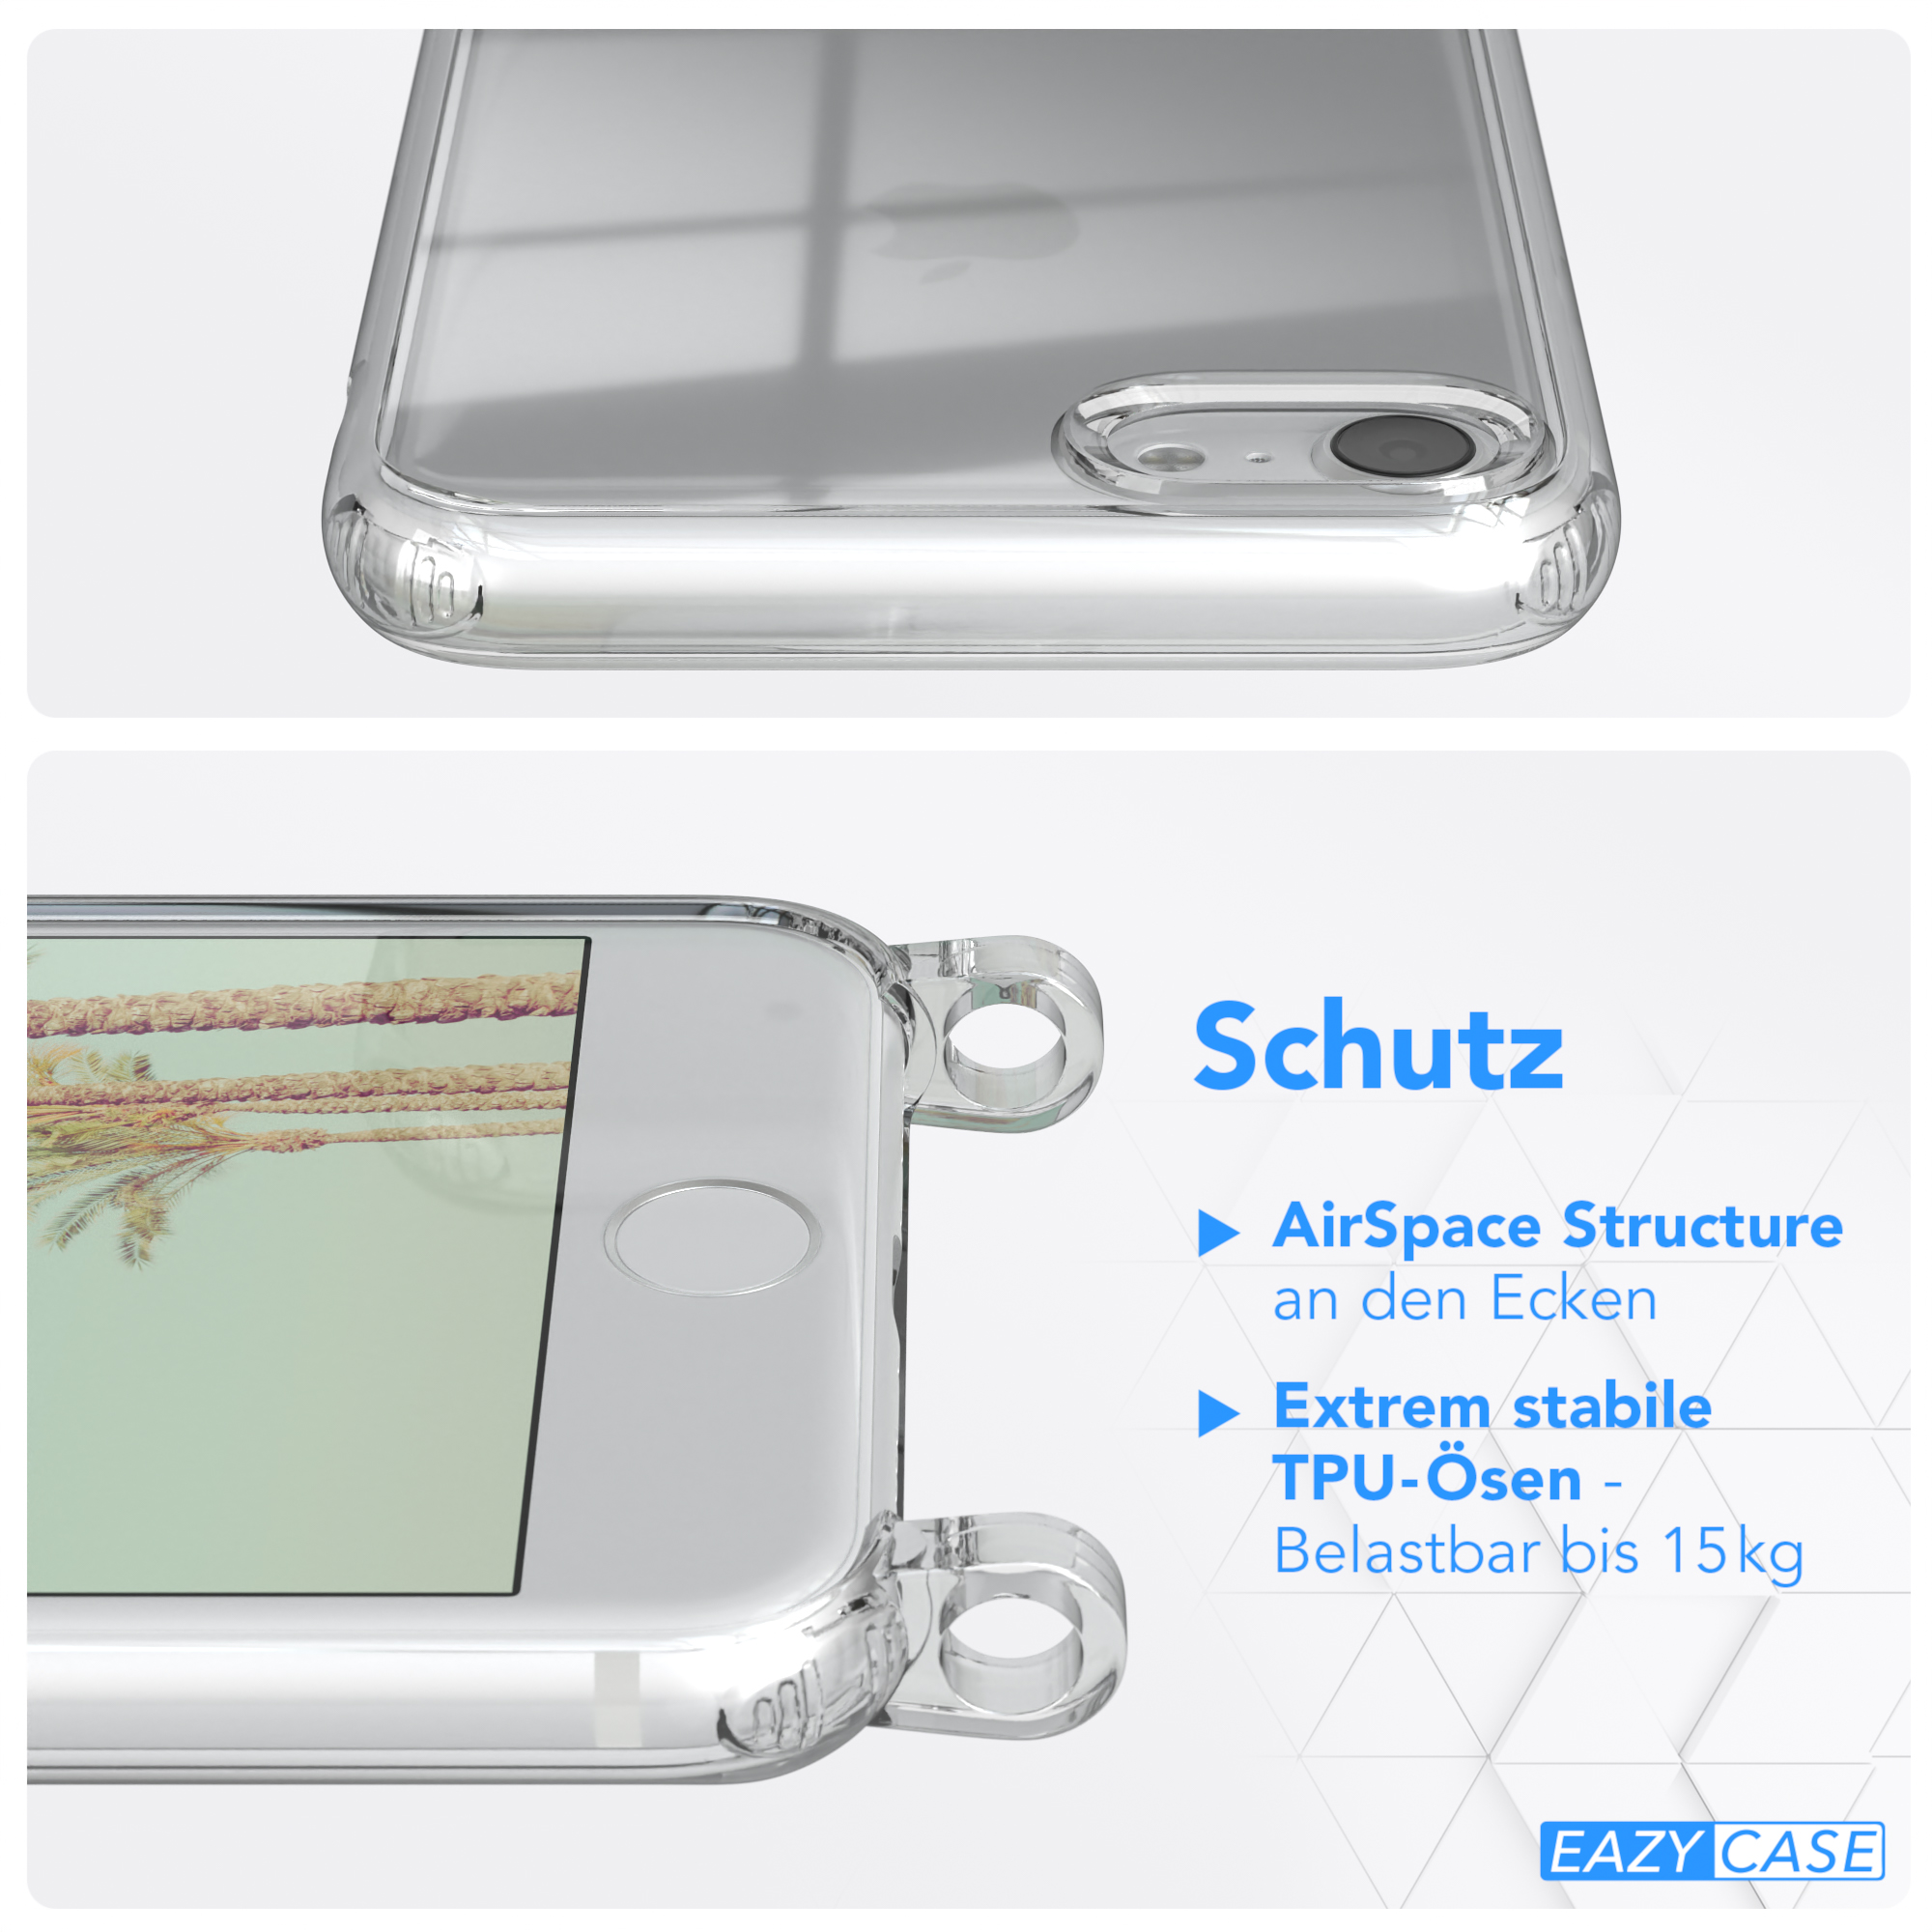 iPhone / EAZY Umhängetasche, SE Clear SE iPhone Cover Apple, 2020, 2022 7 mit Grün 8, / Umhängeband, CASE Weiß